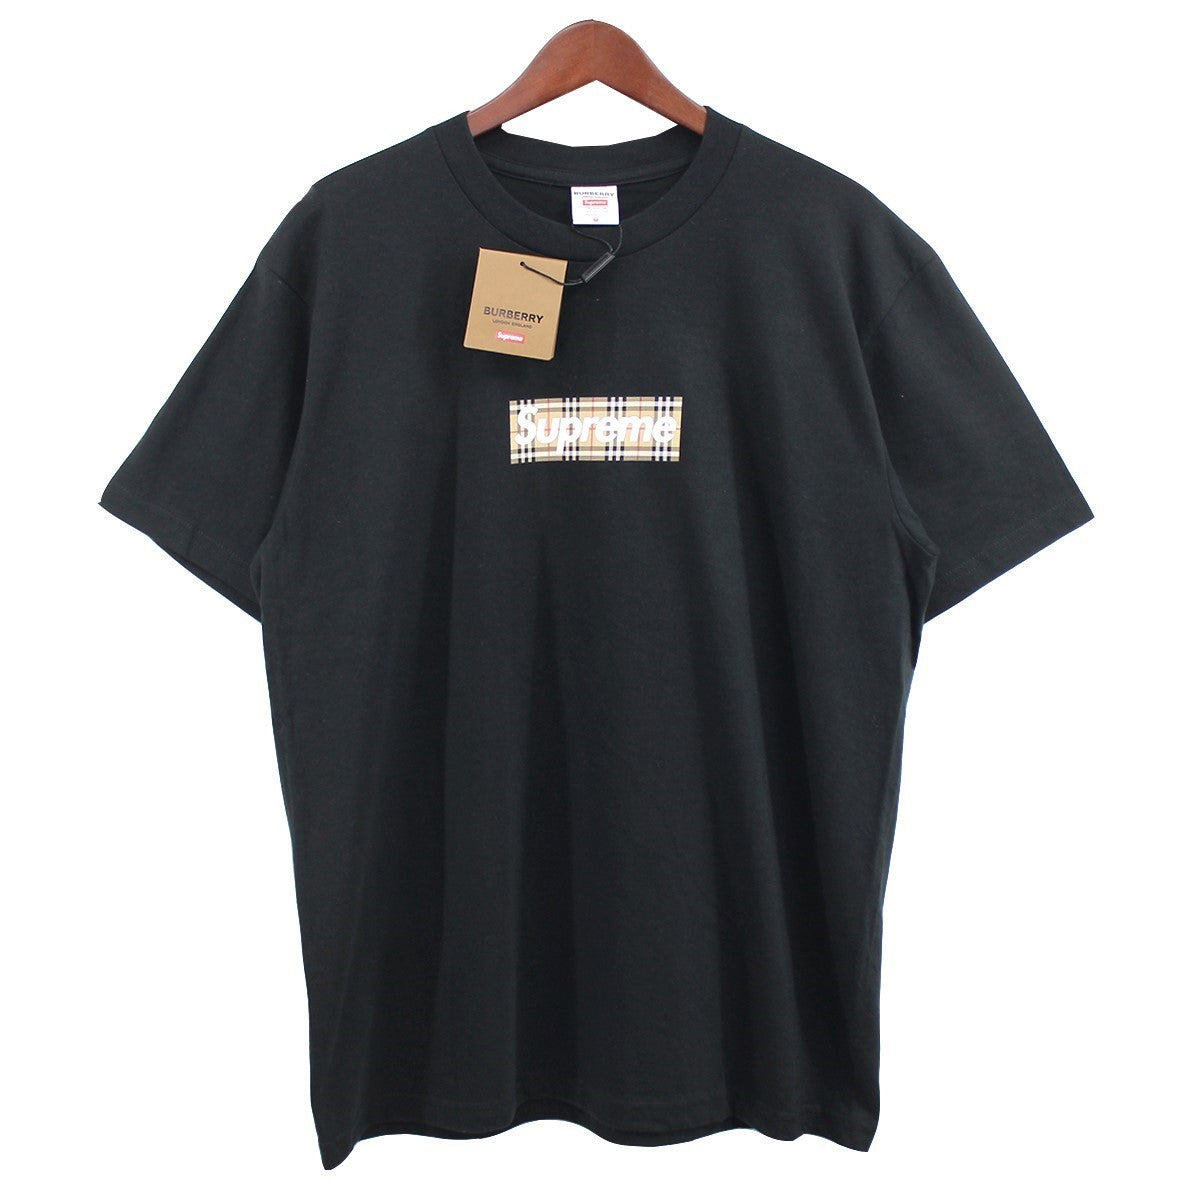 Burberry バーバリー Logo t-shirt ロゴ tシャツ - Tシャツ/カットソー ...